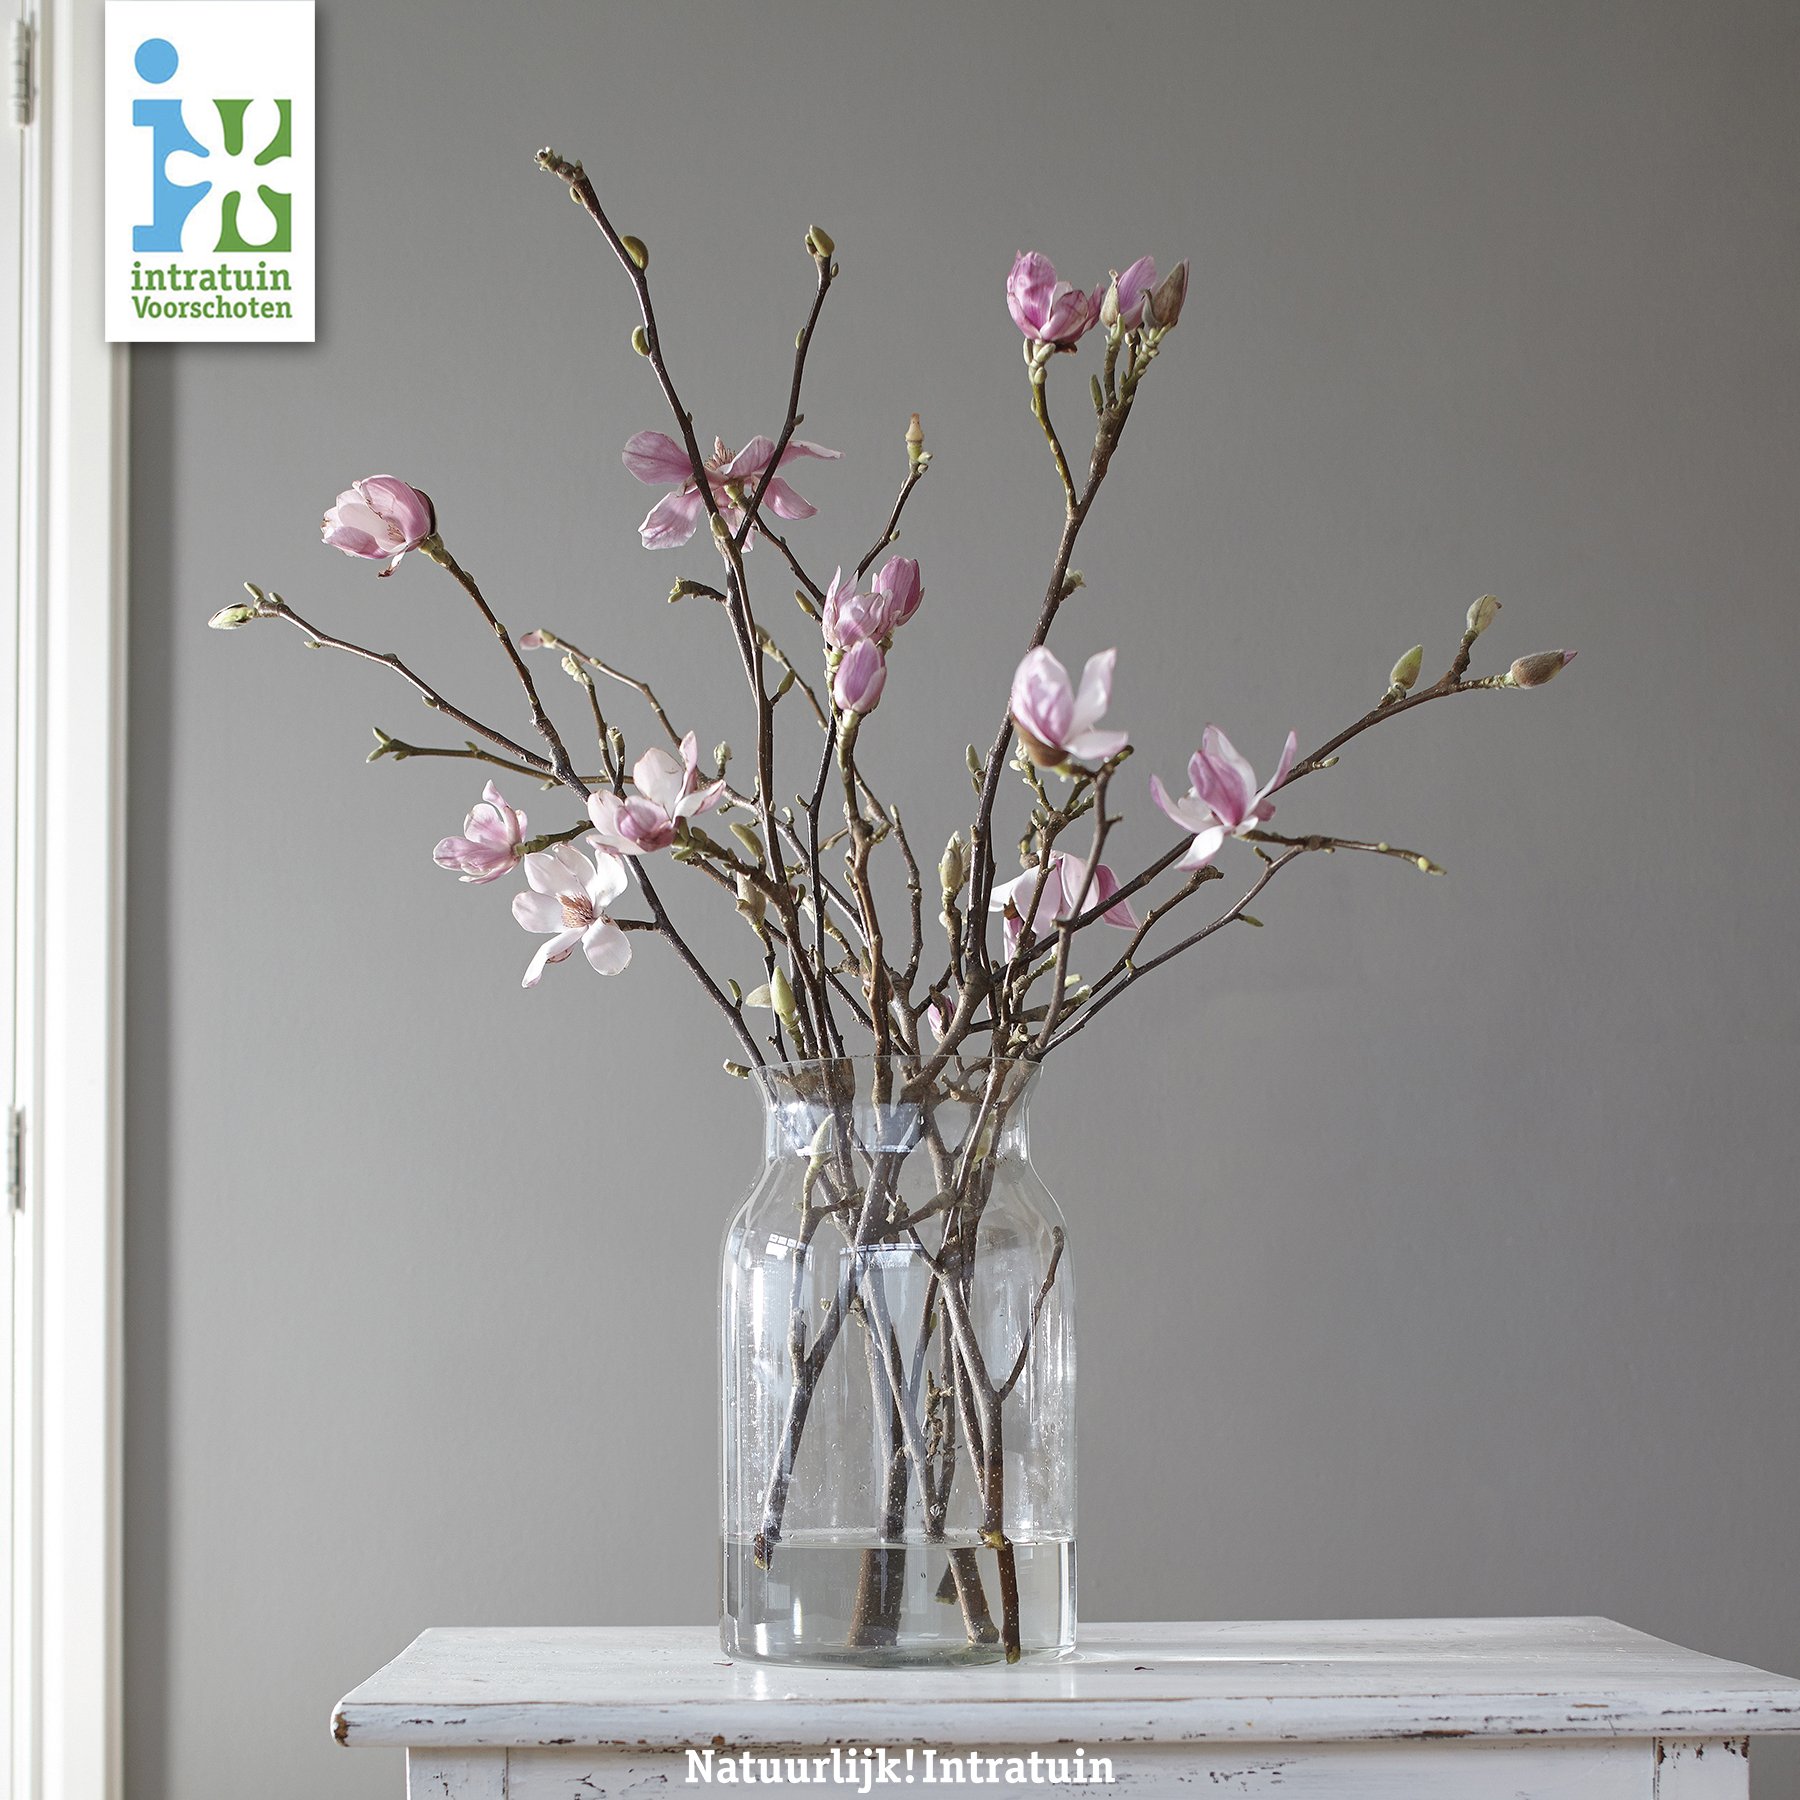 mist Aan boord Intrekking IntratuinVoorschoten on Twitter: "MAGNOLIA | Simpel maar zo mooi 😍 Wat  vind jij? #magnolia #simpel #mooi #fleur #bloemen #takken #minimal #vaas  https://t.co/kEQYgcNQ9n" / Twitter